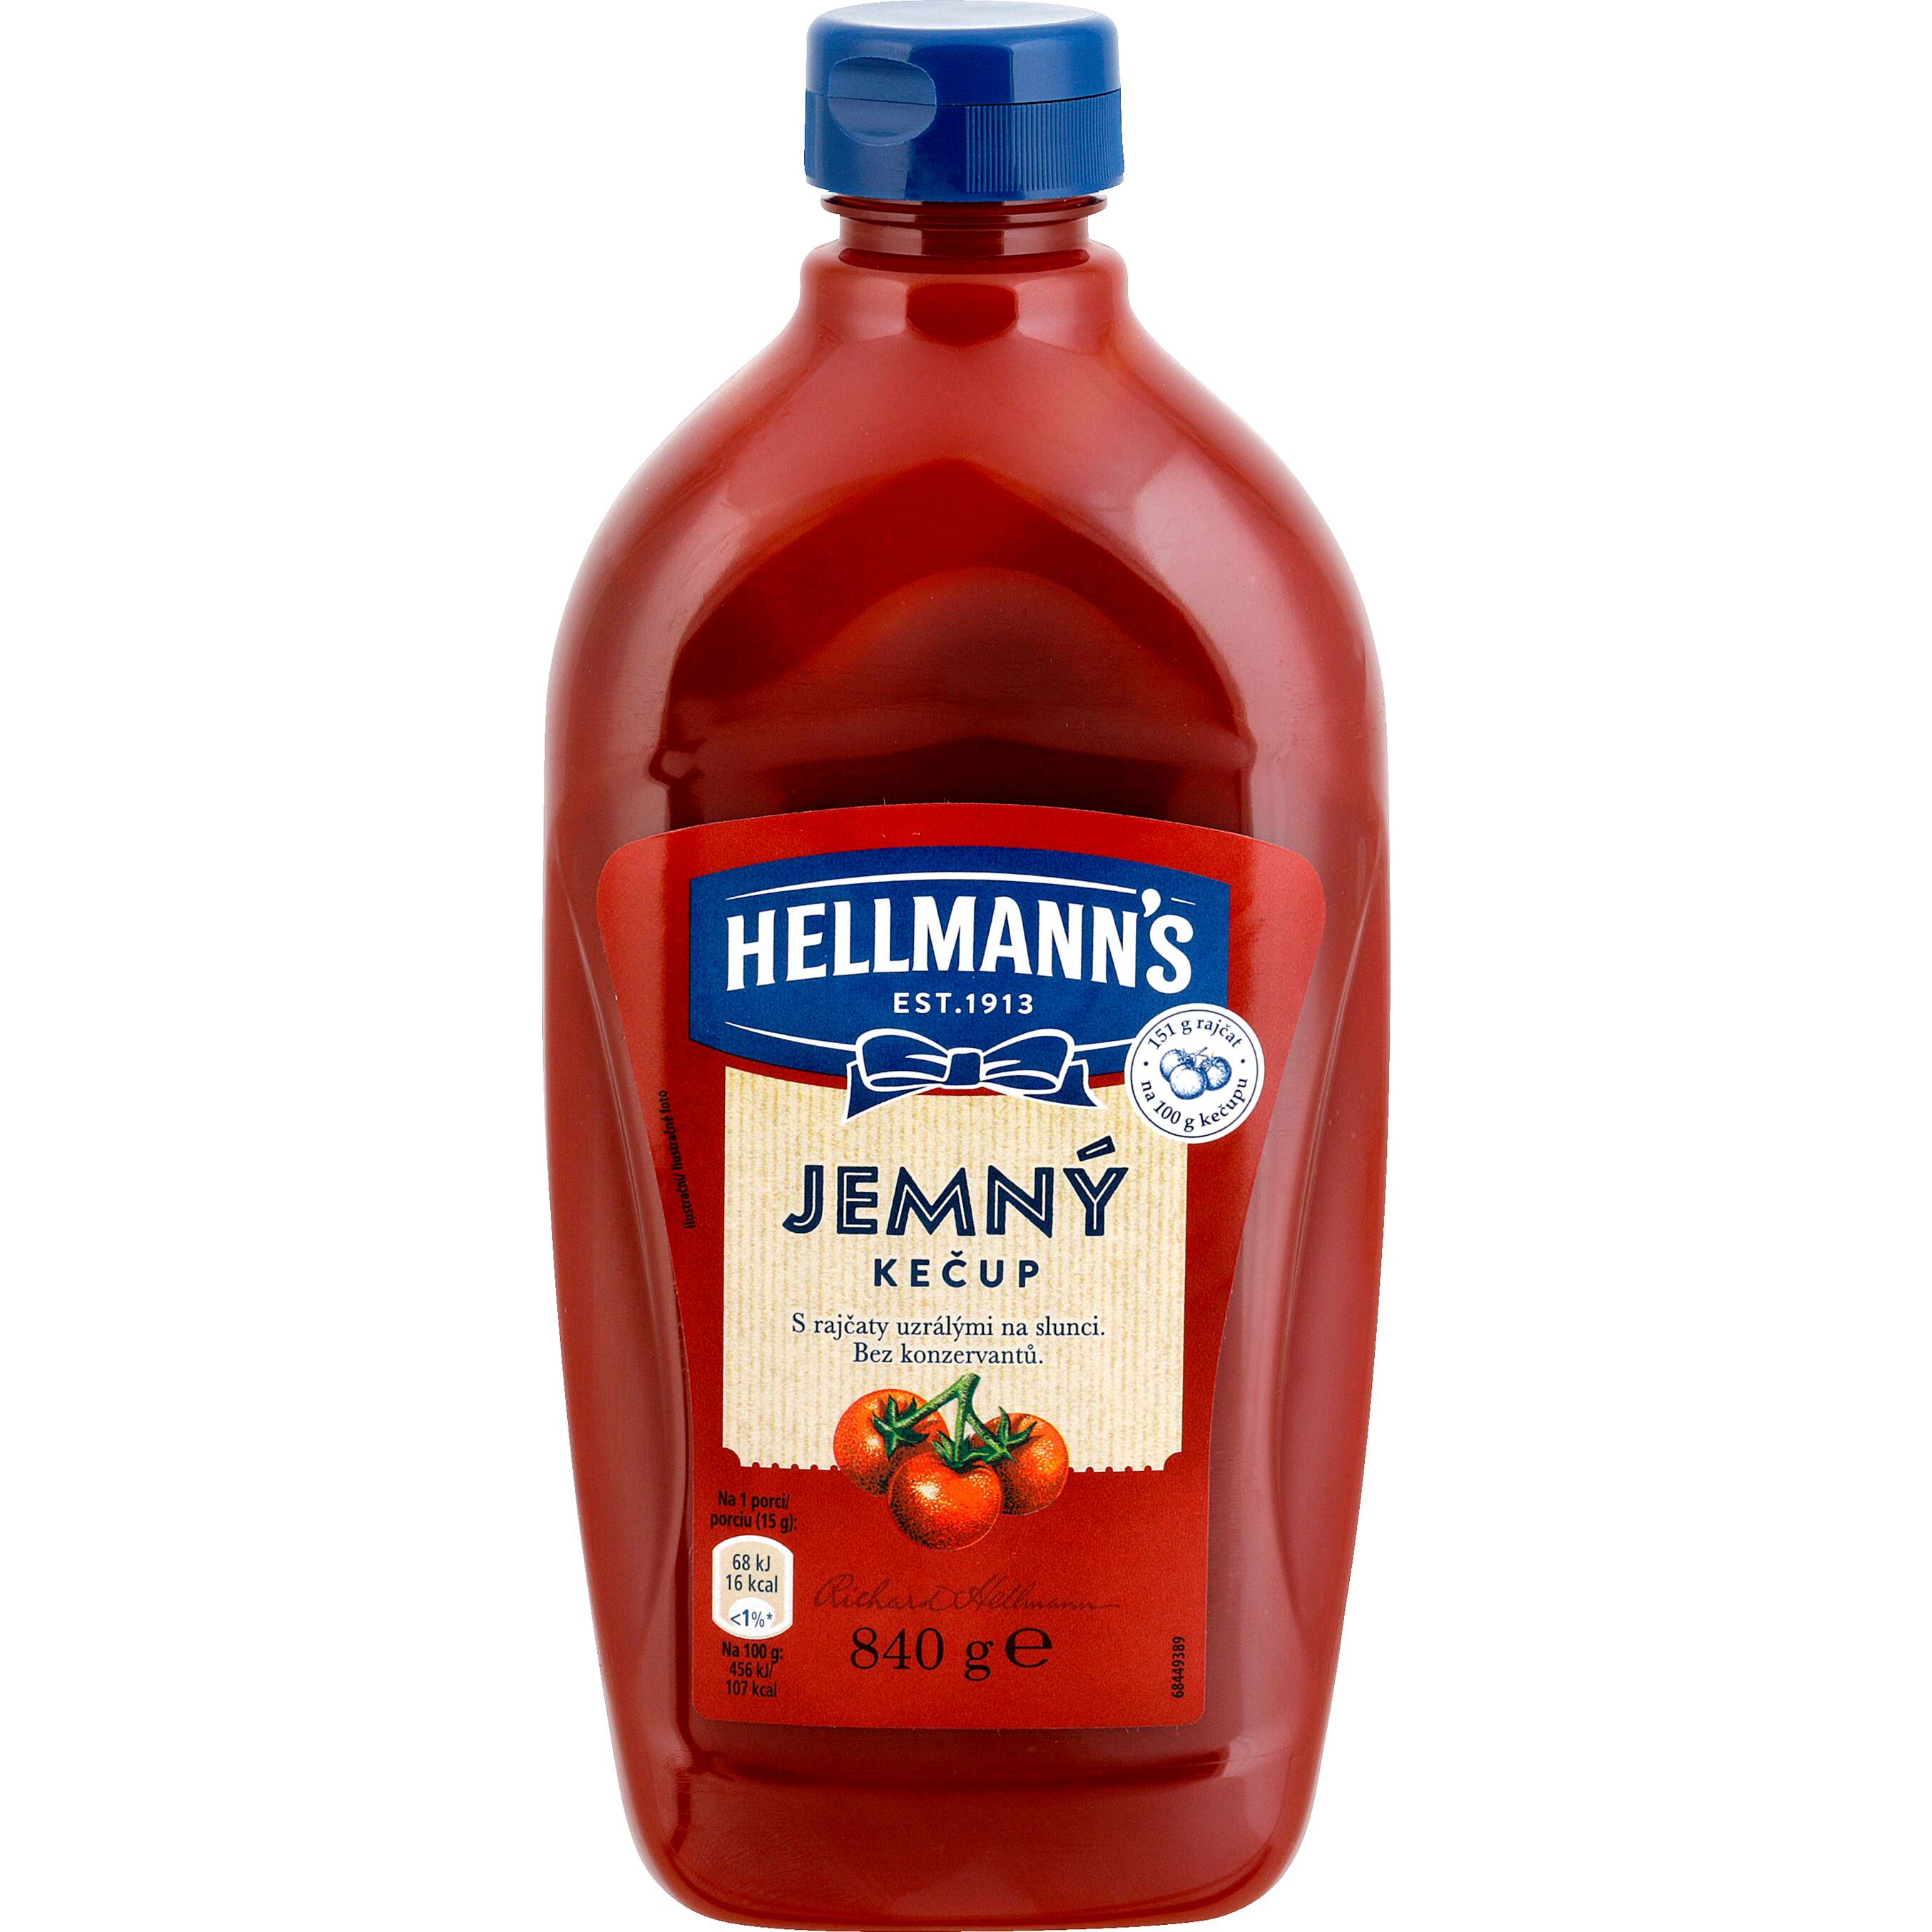 Zobrazit nabídku Hellmann's Kečup